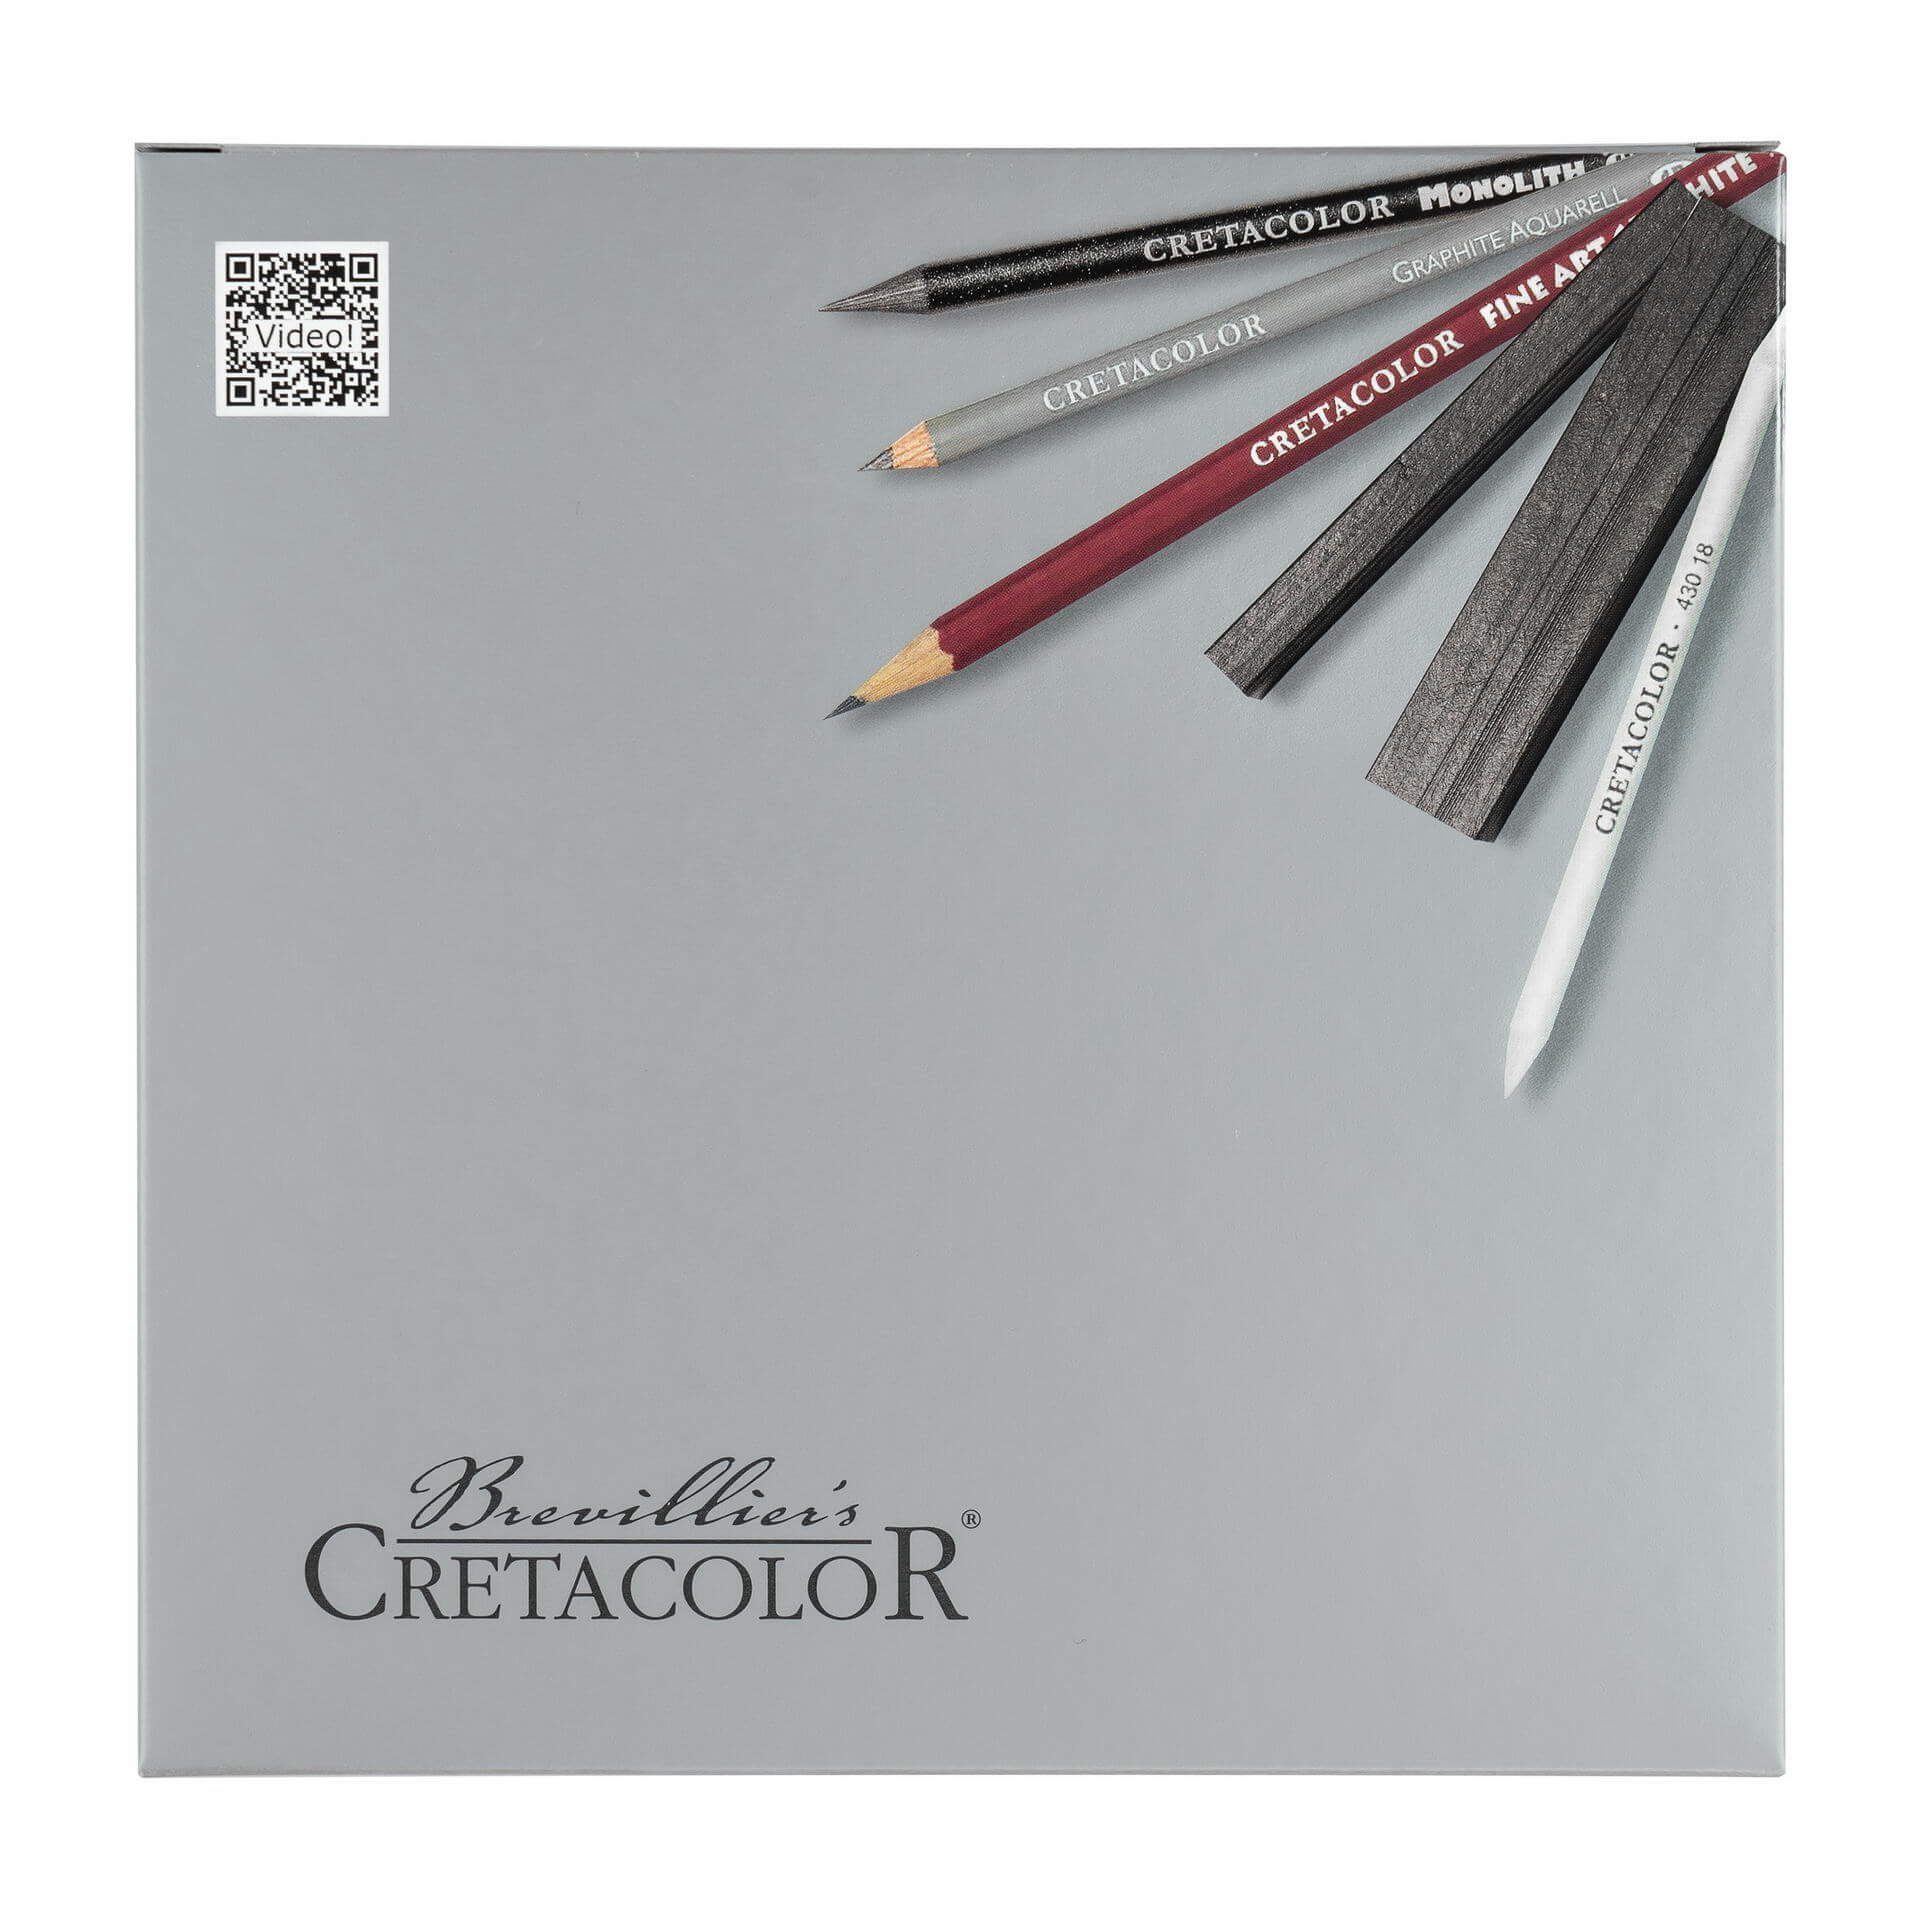 Brevilliers Cretacolor Bleistift Silver Box 17-teilig - Graphitset für Künstler, Ideal zum Zeichnen und Skizzieren - Made in Austria